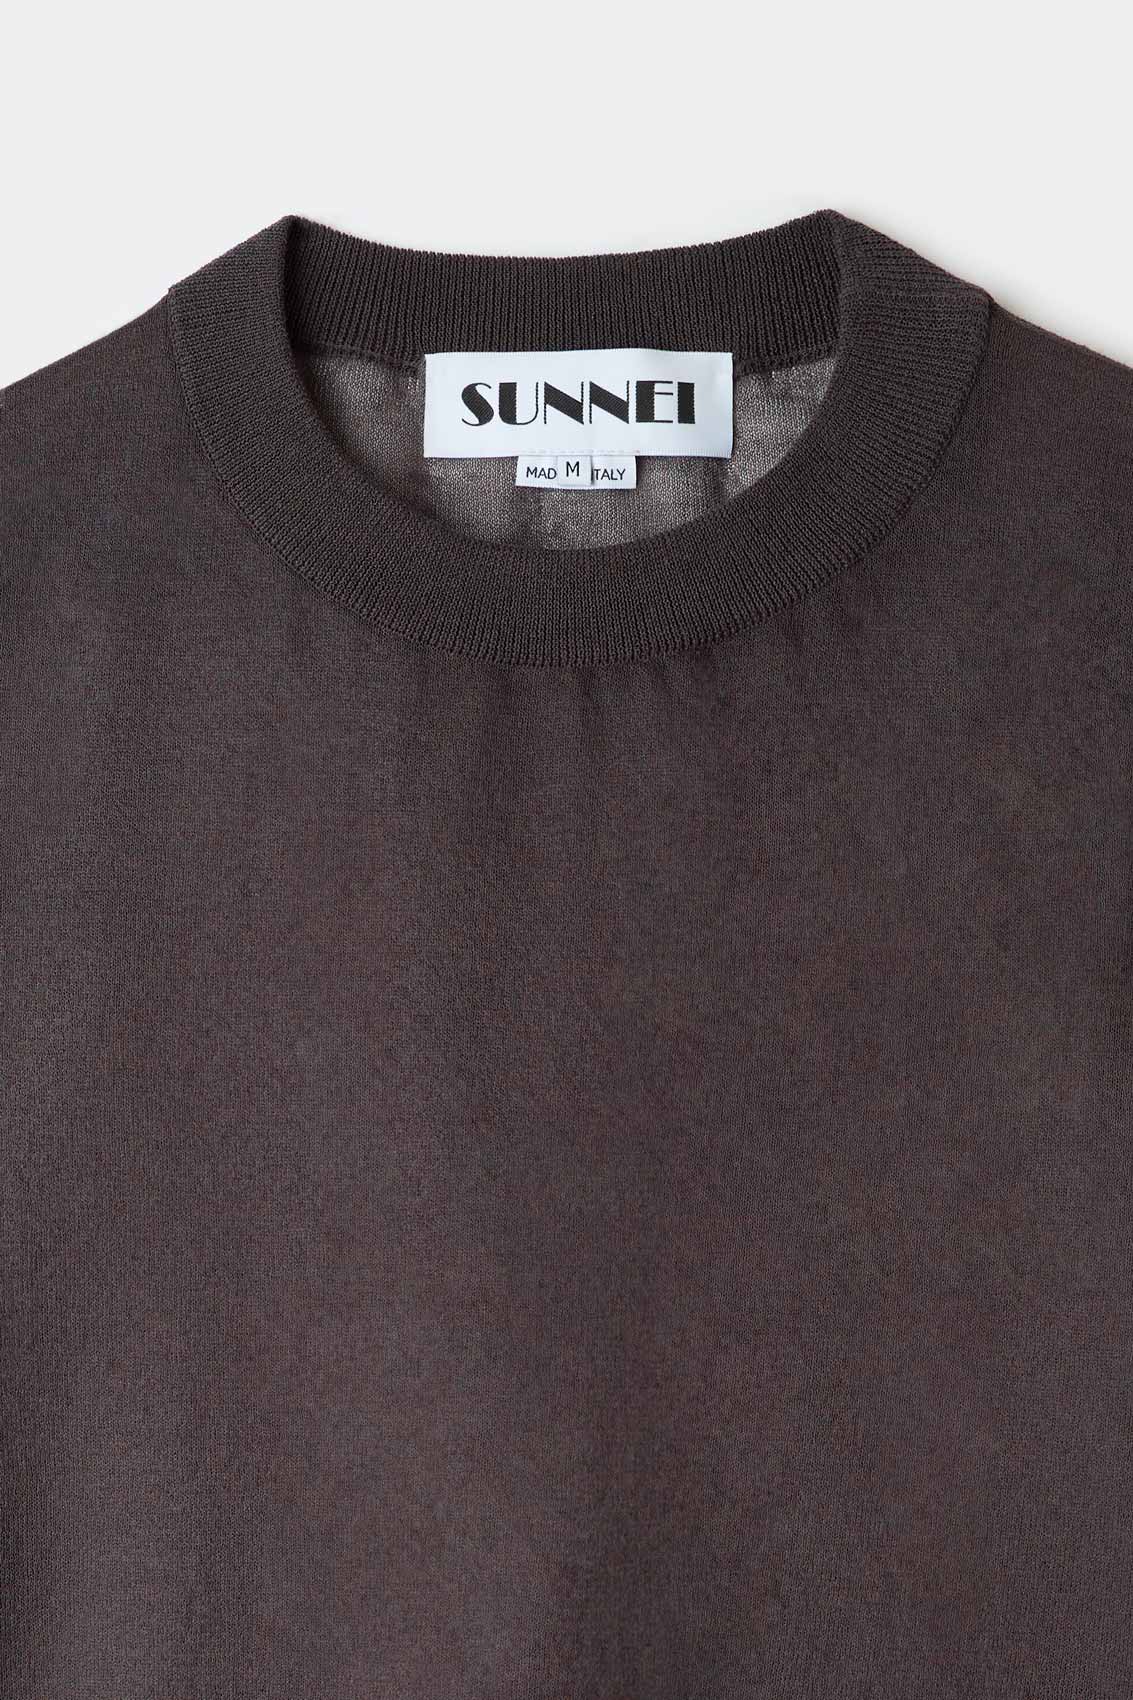 Sunnei Black Mesh Long Sleeve T-Shirt Sunnei